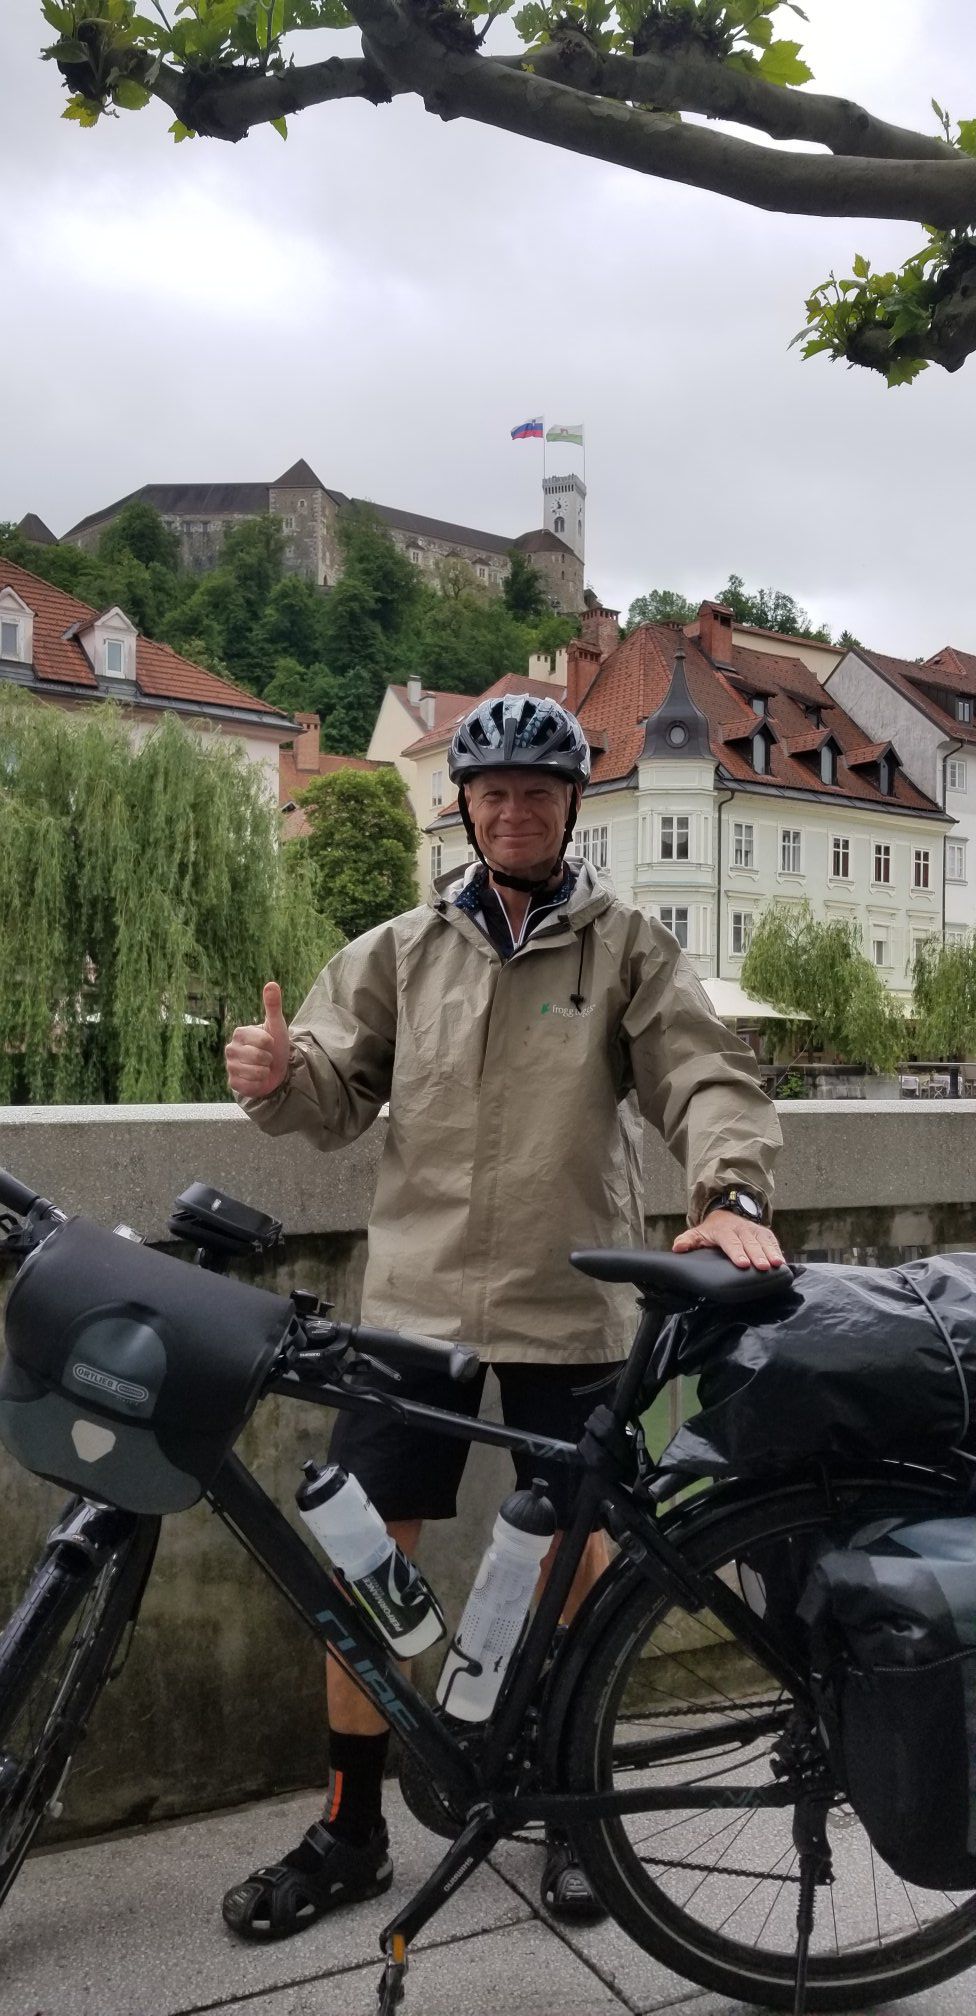 Für den guten Zweck: Todd Burgman, Kapitän der Mein Schiff 6, fährt in seinem Urlaub mit dem Fahrrad von Triest nach Kiel und sammelt damit Geld für die TUI Cruises Patenschaft.